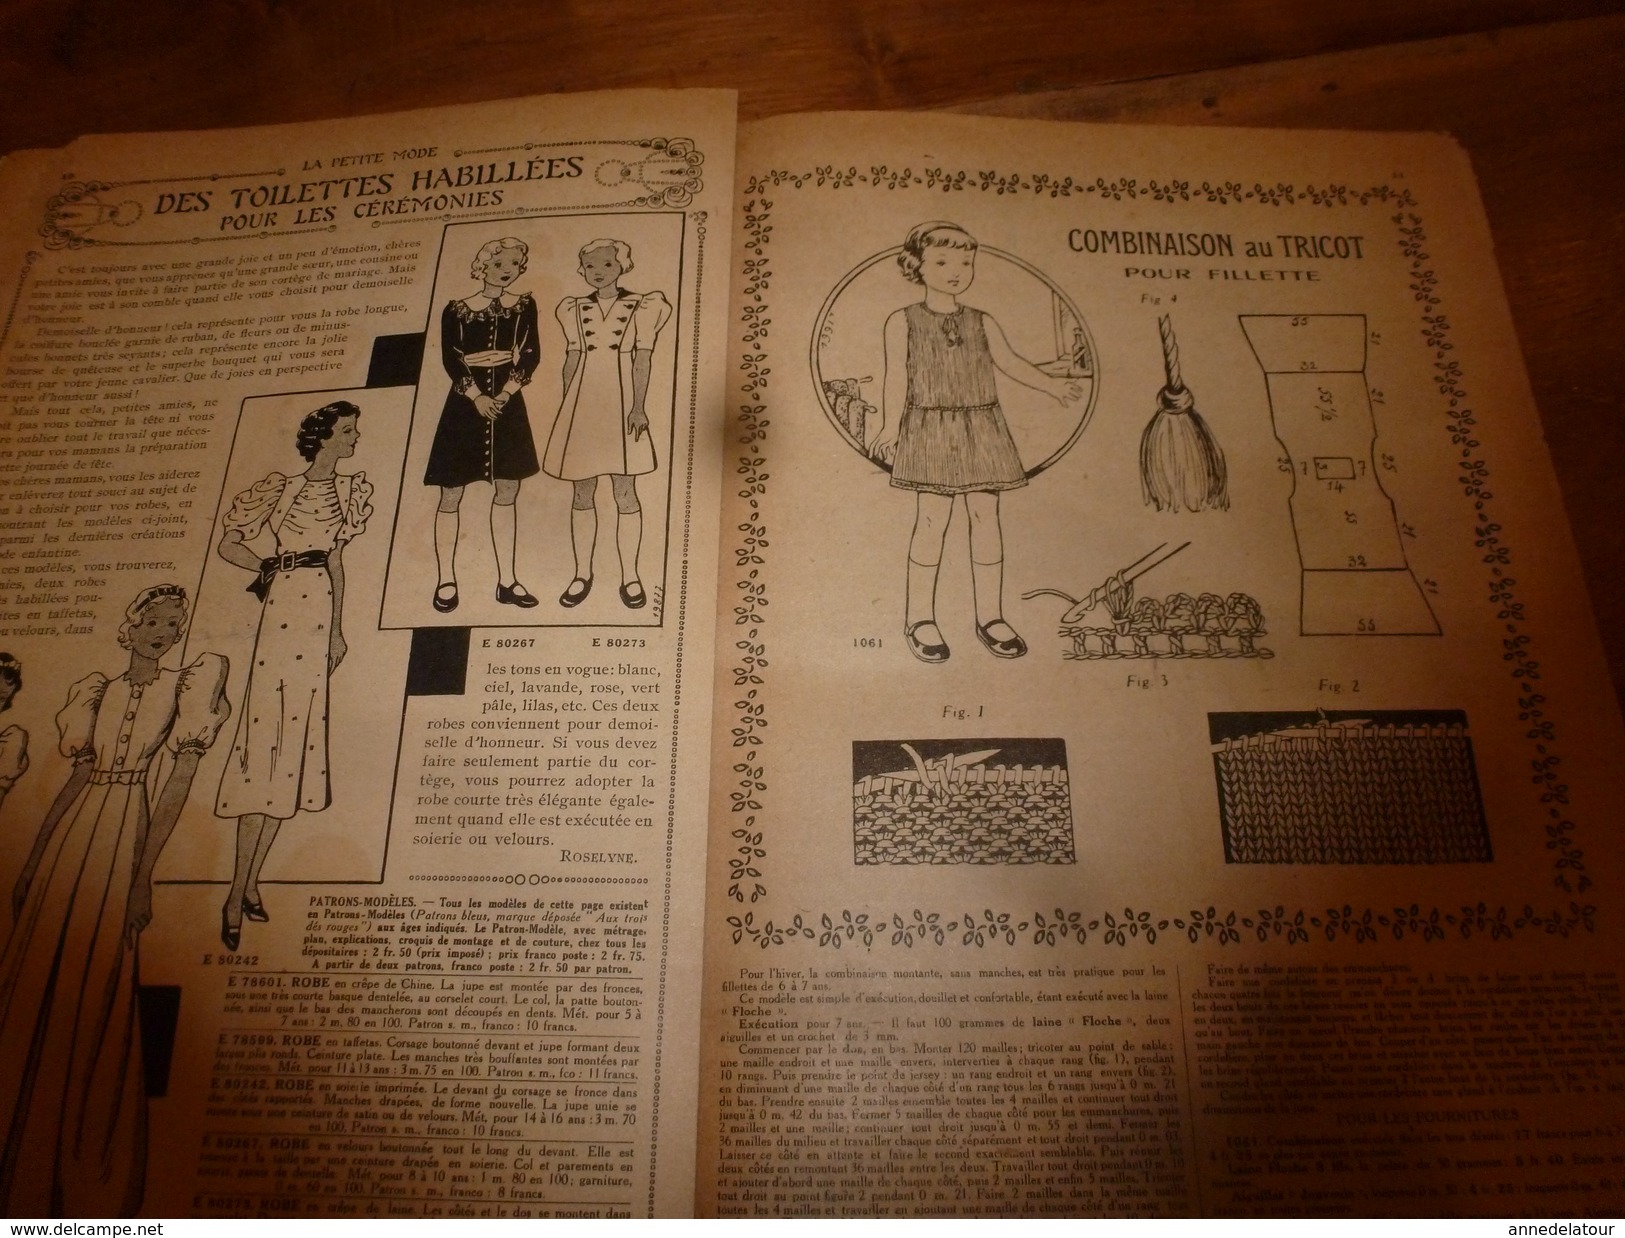 1937 LISETTE:Le violon magique d'Huguette Vorel (texte et dessins de René Louys);Combinaison au tricot pour fillette;etc